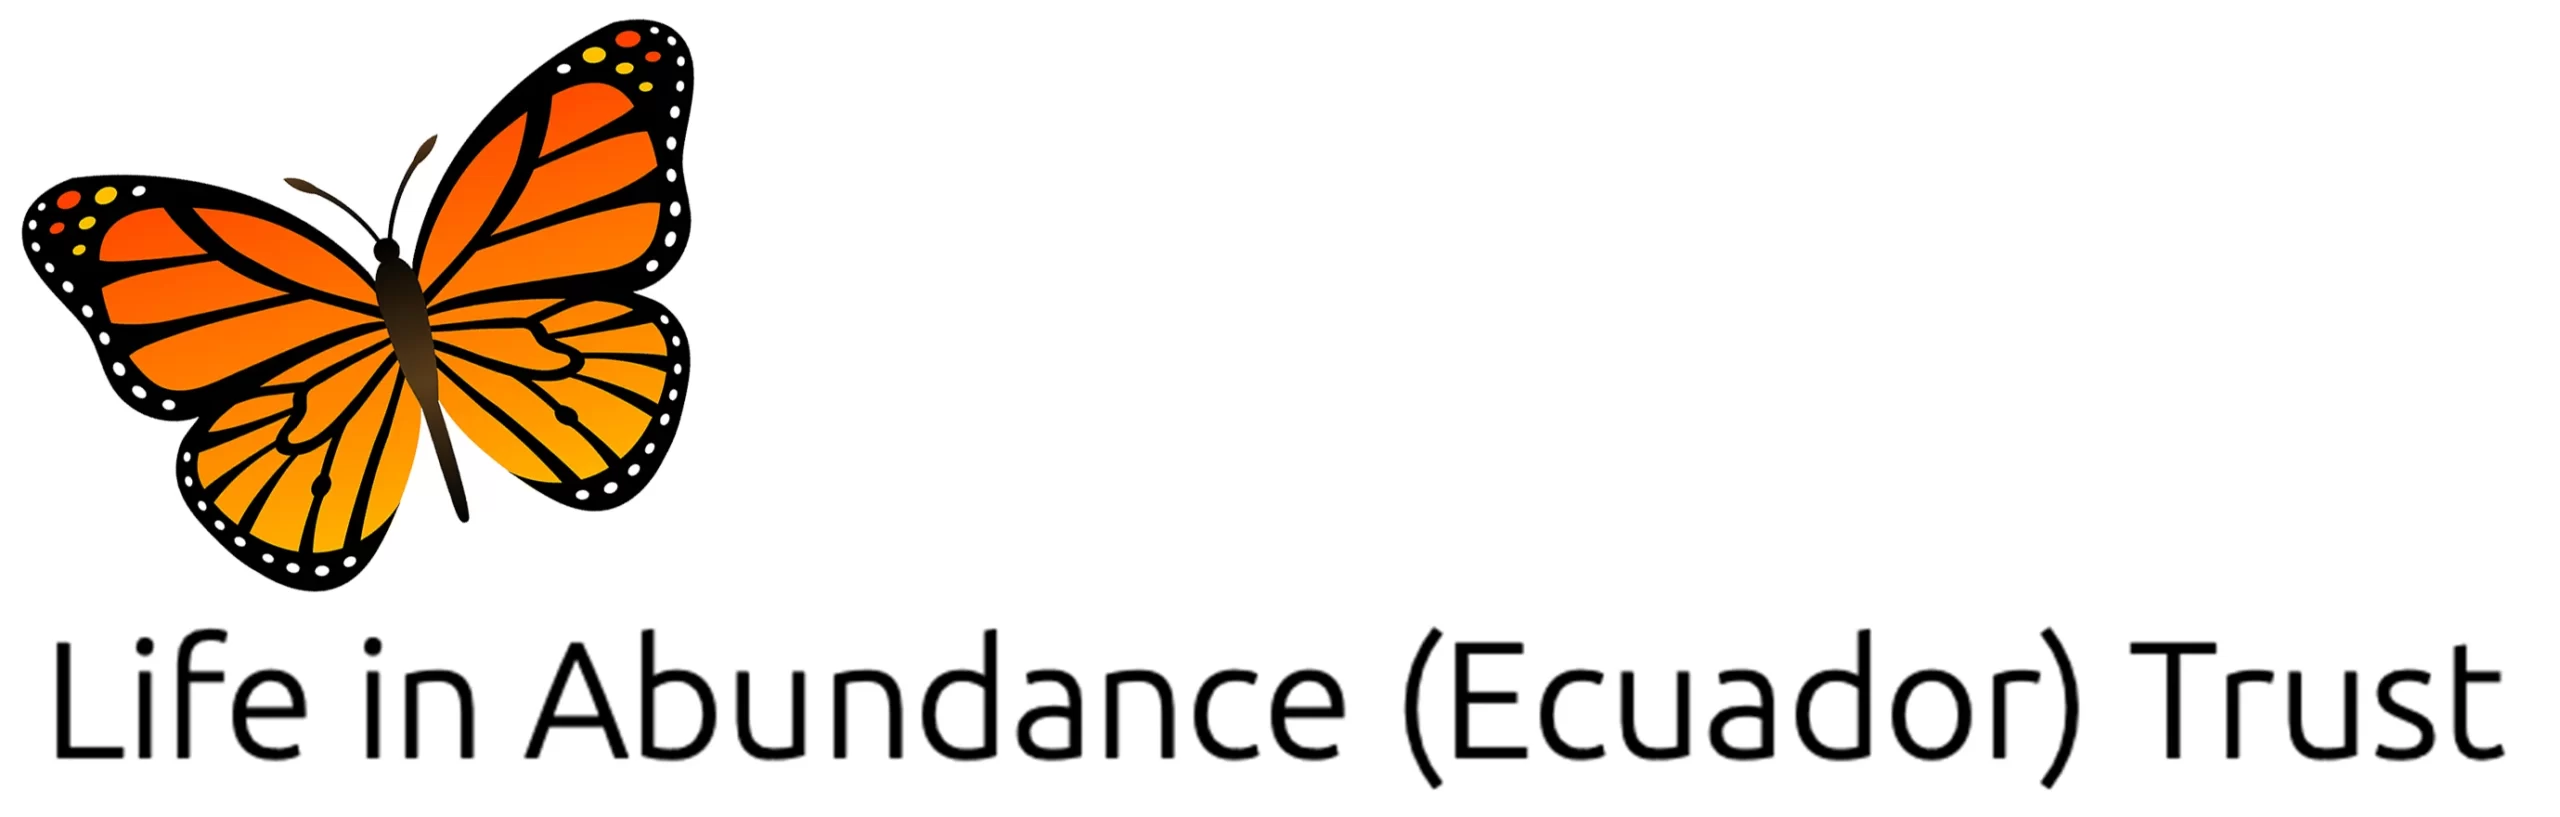 Life In Abundance Trust logo